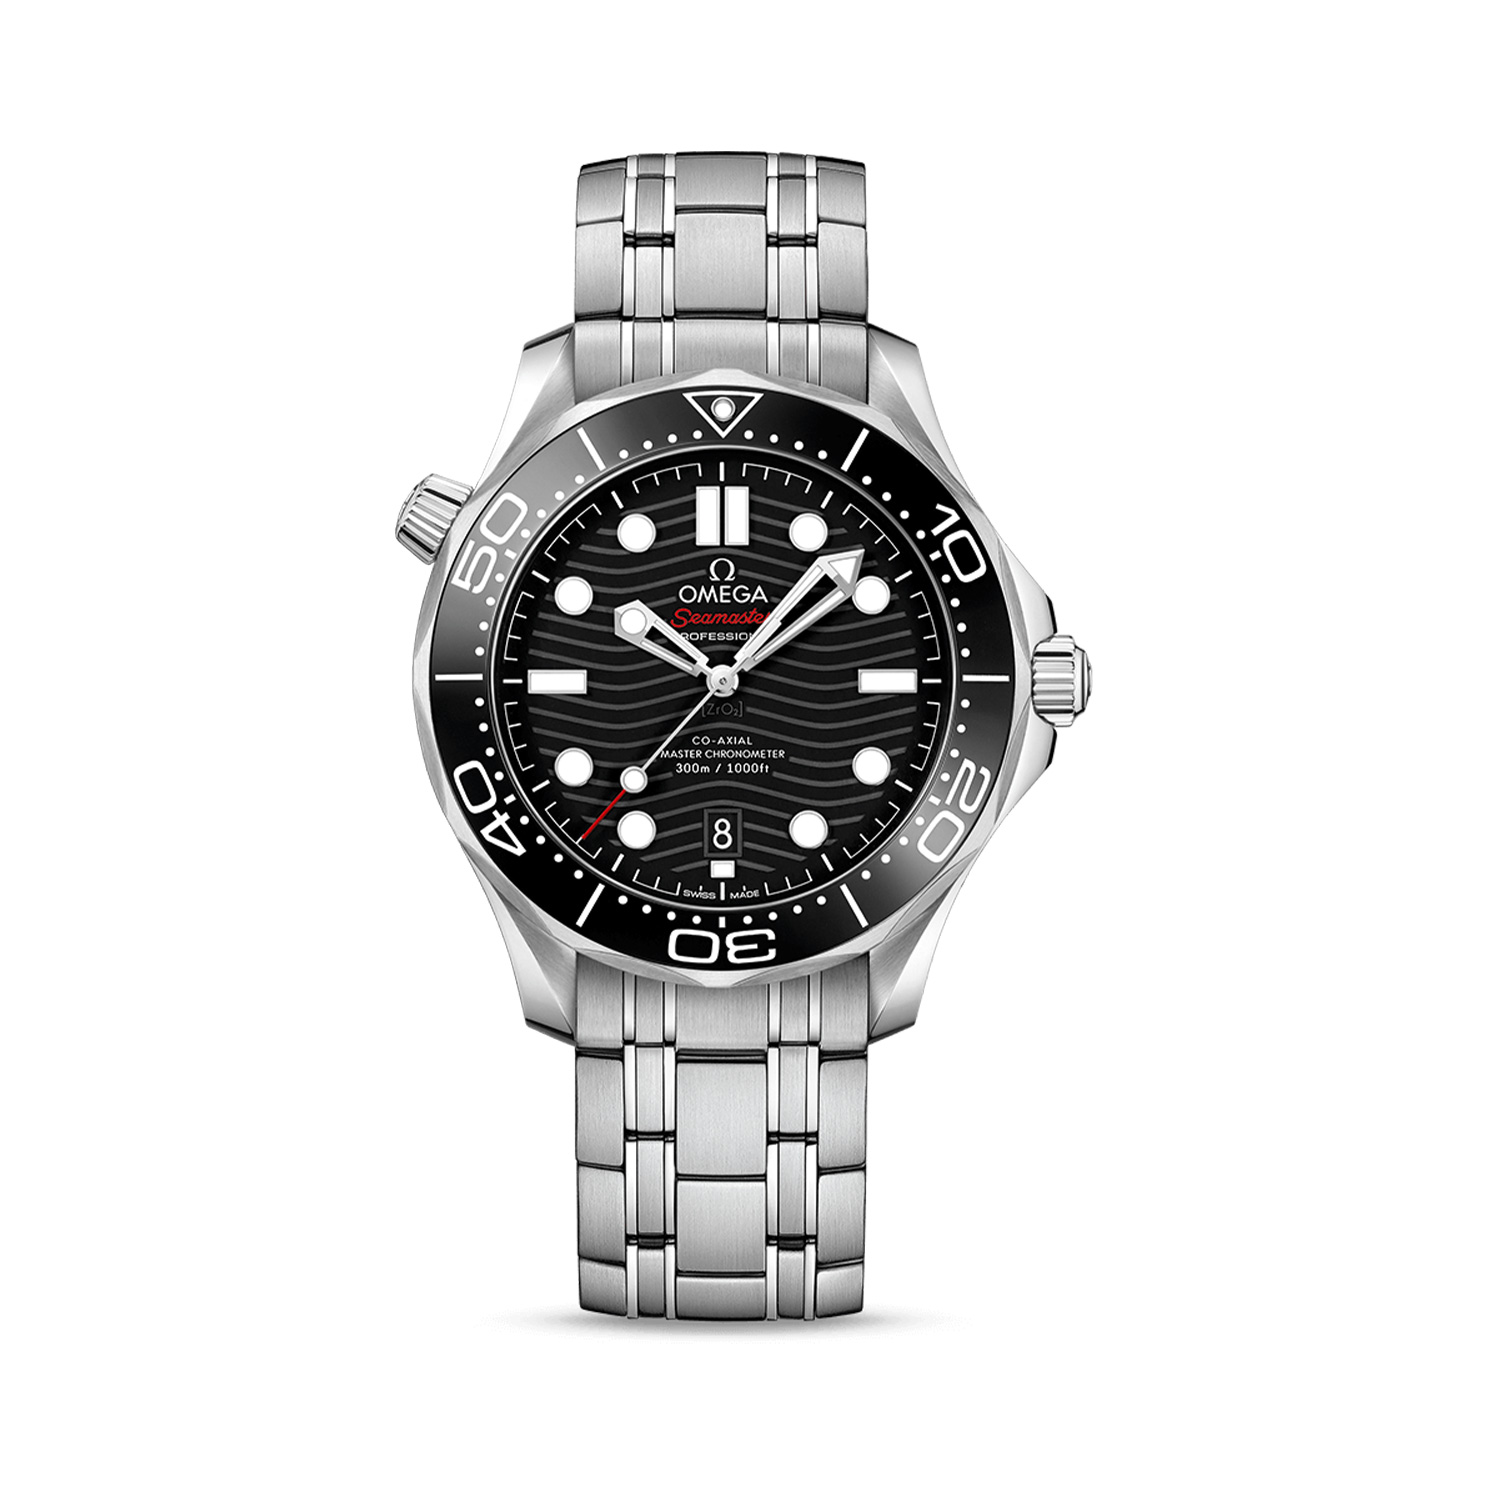 Montre seamaster diver 300m master chronometer - Omega